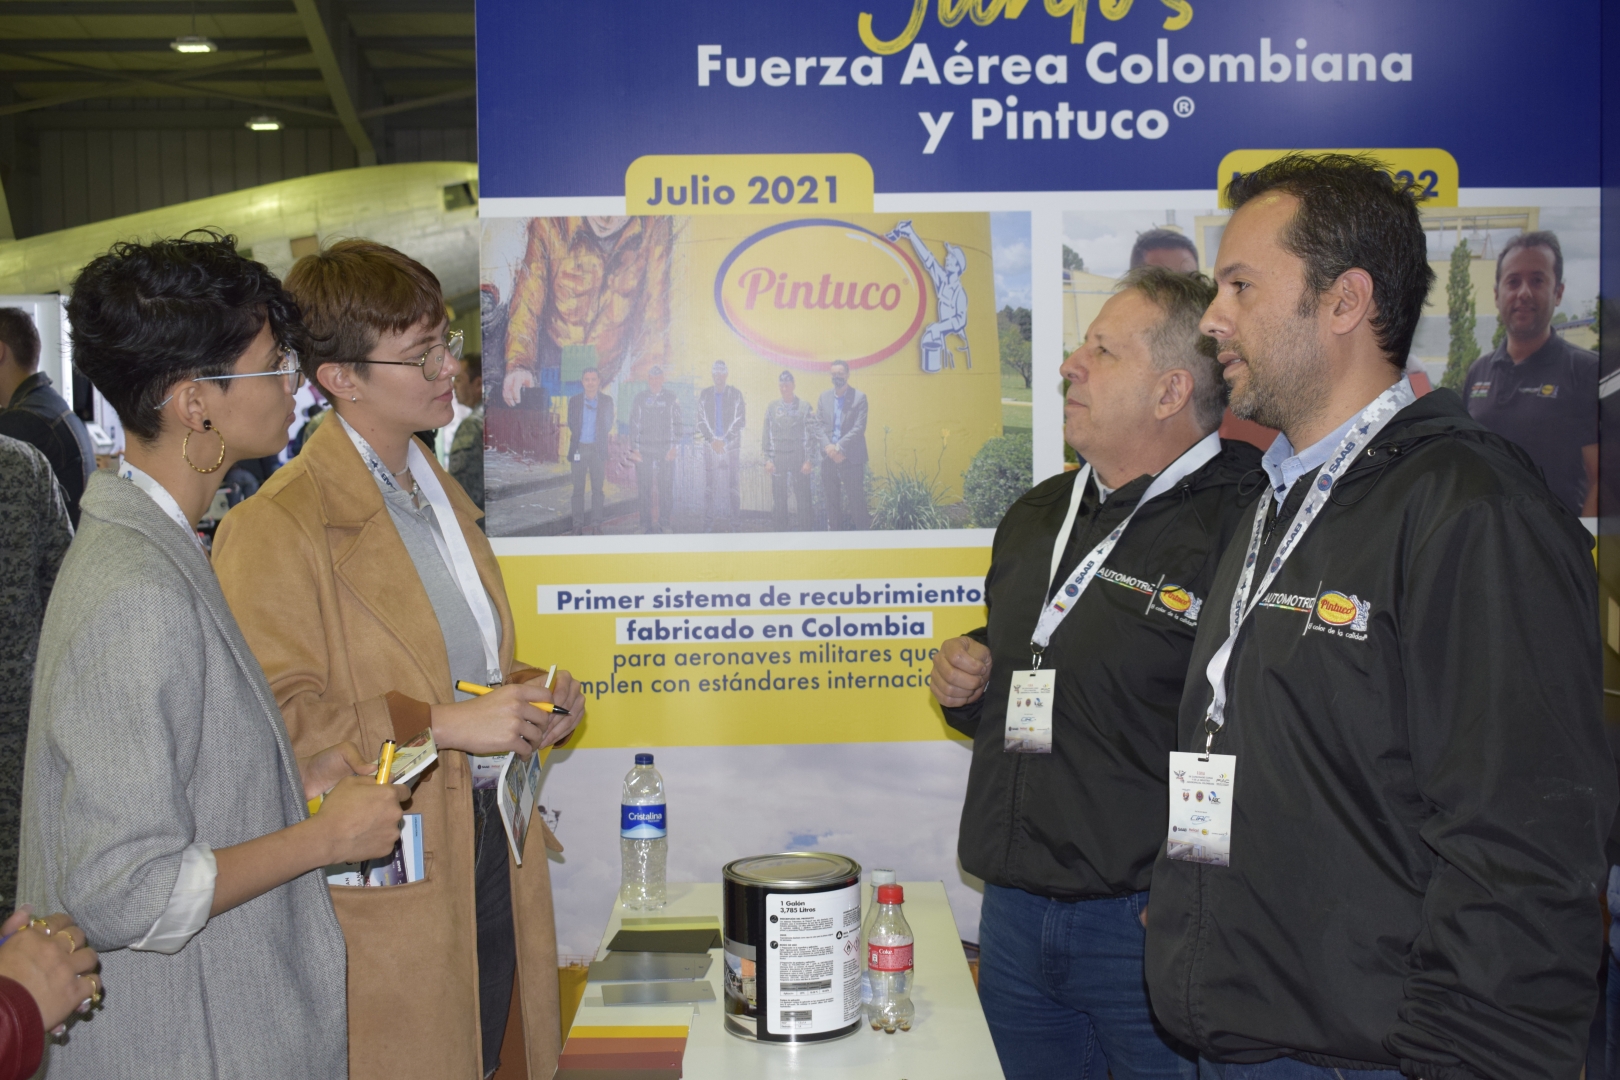 Feria de Capacidades CAMAN y de la Industria Aeroespacial Colombiana